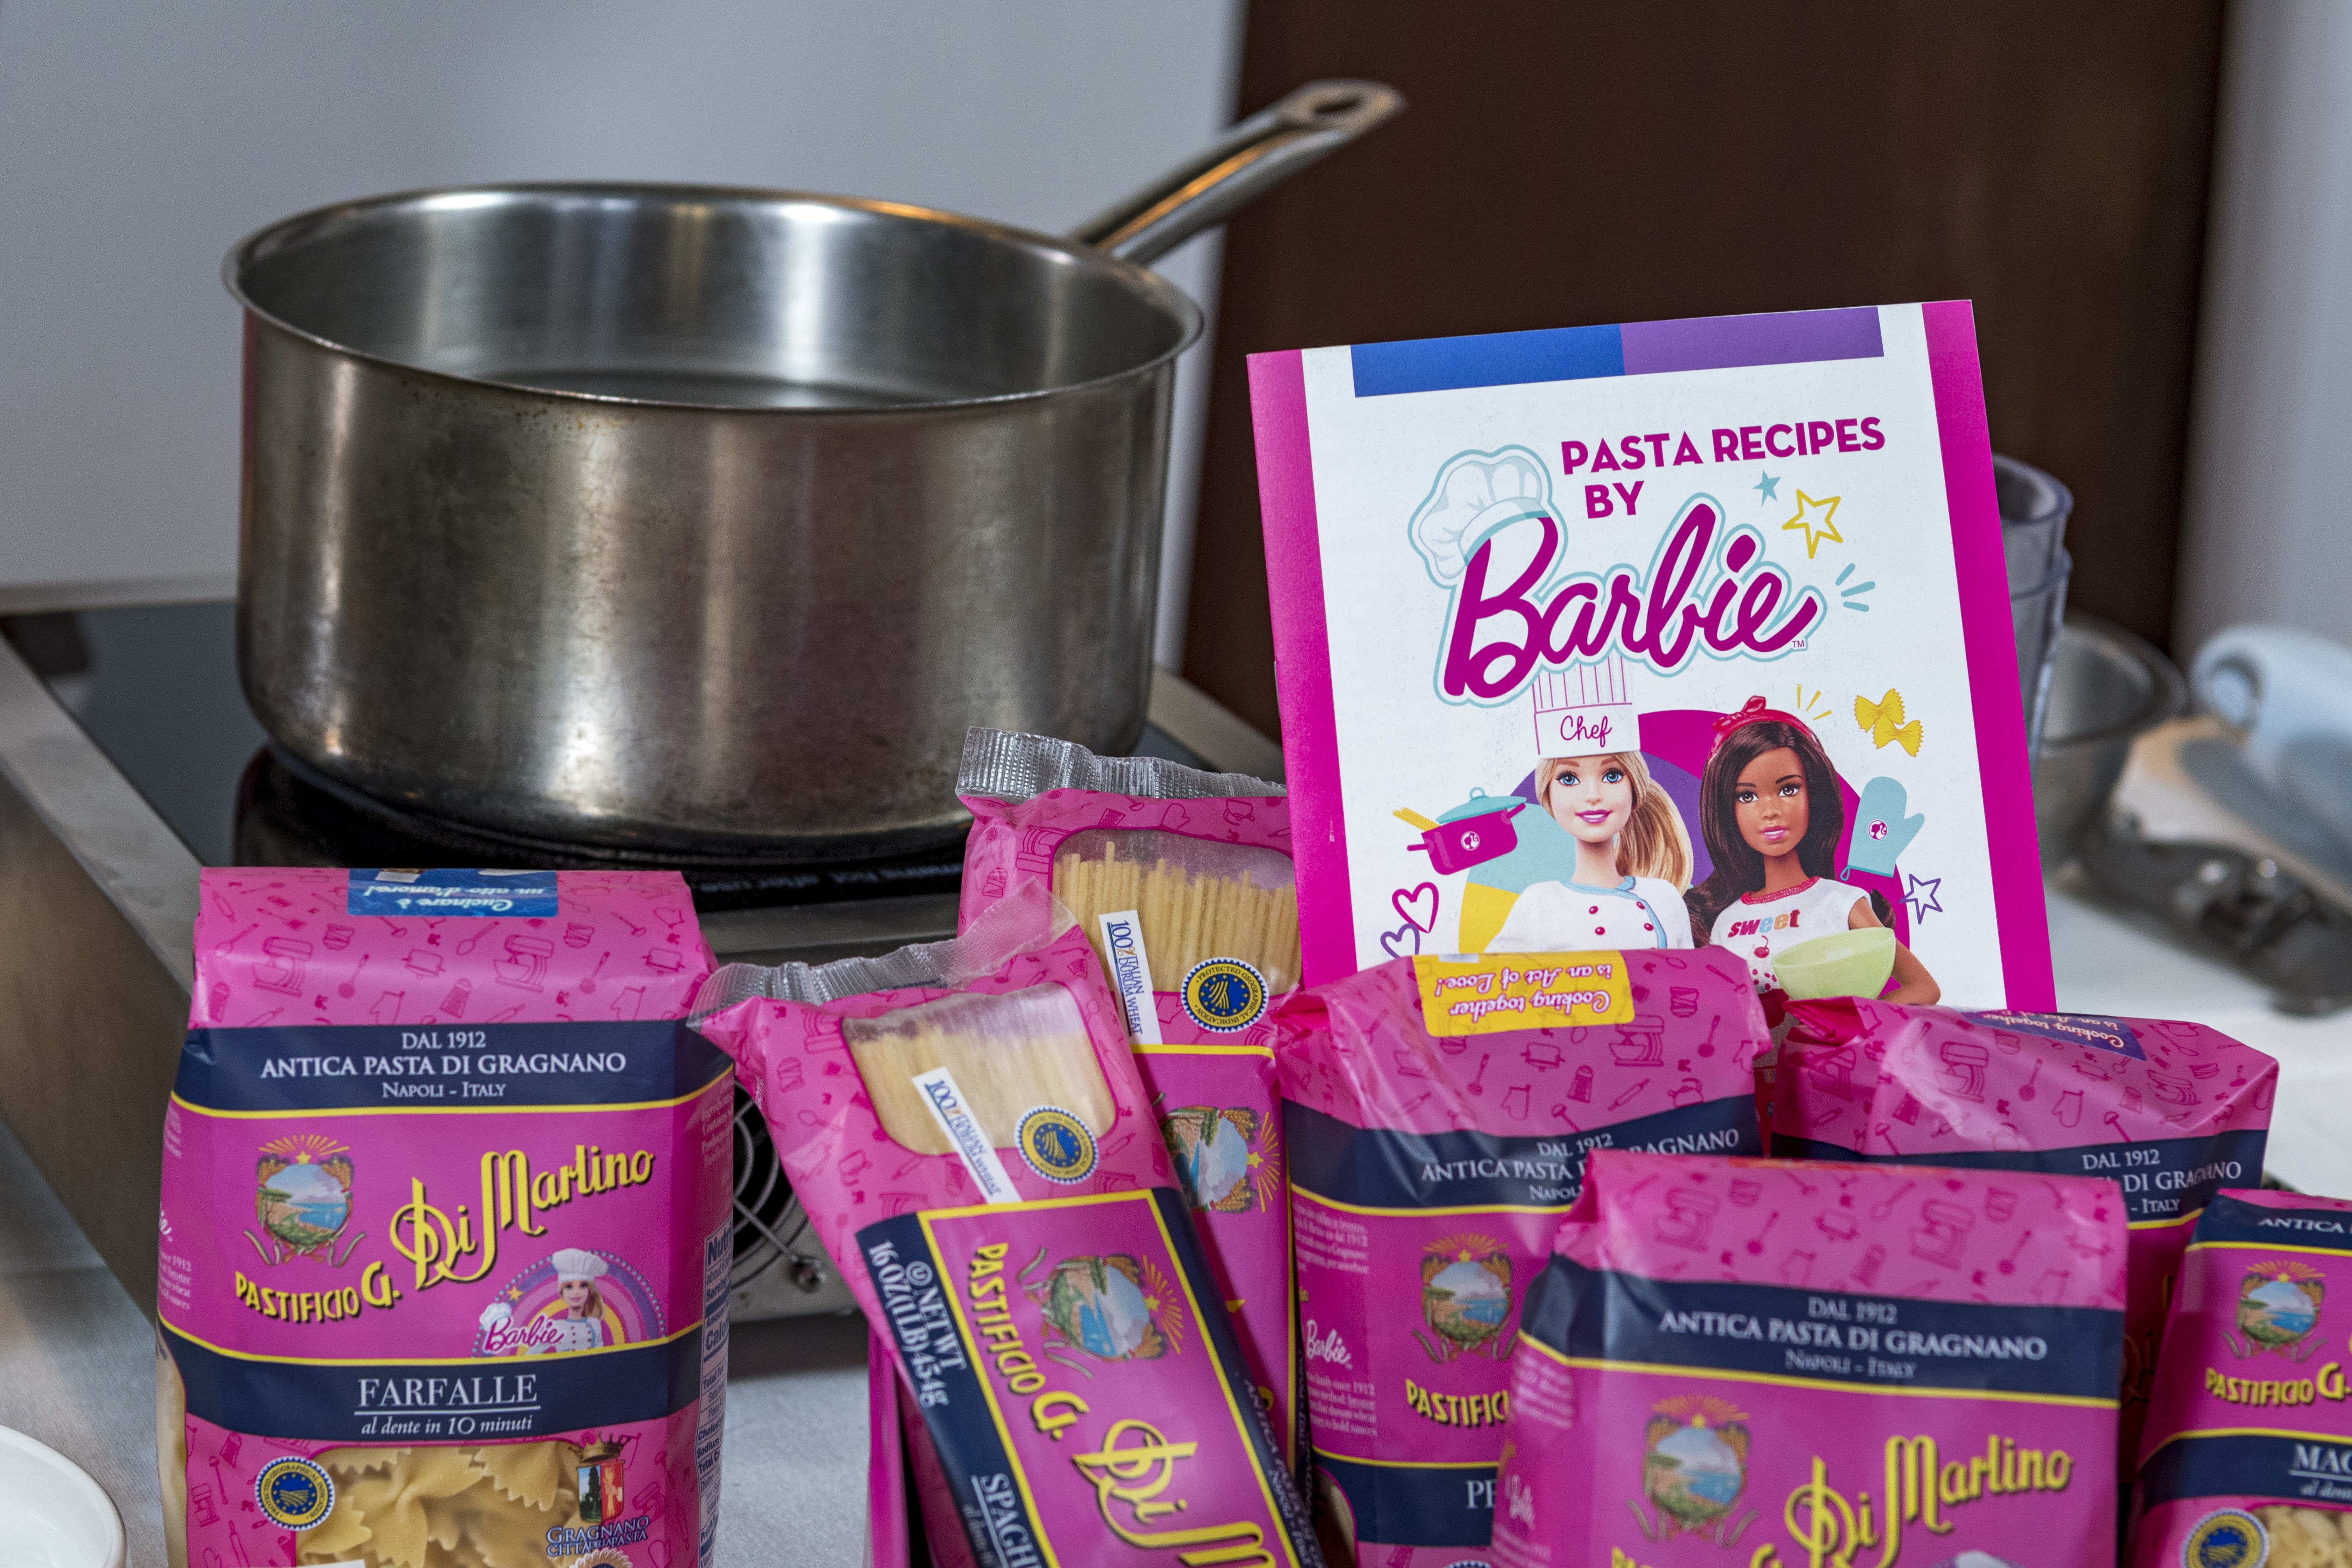 Di Martino - Barbie Pasta in einer bunten Barbie Blechdose mit eleganter Kochschürze - passend zum Barbie Film